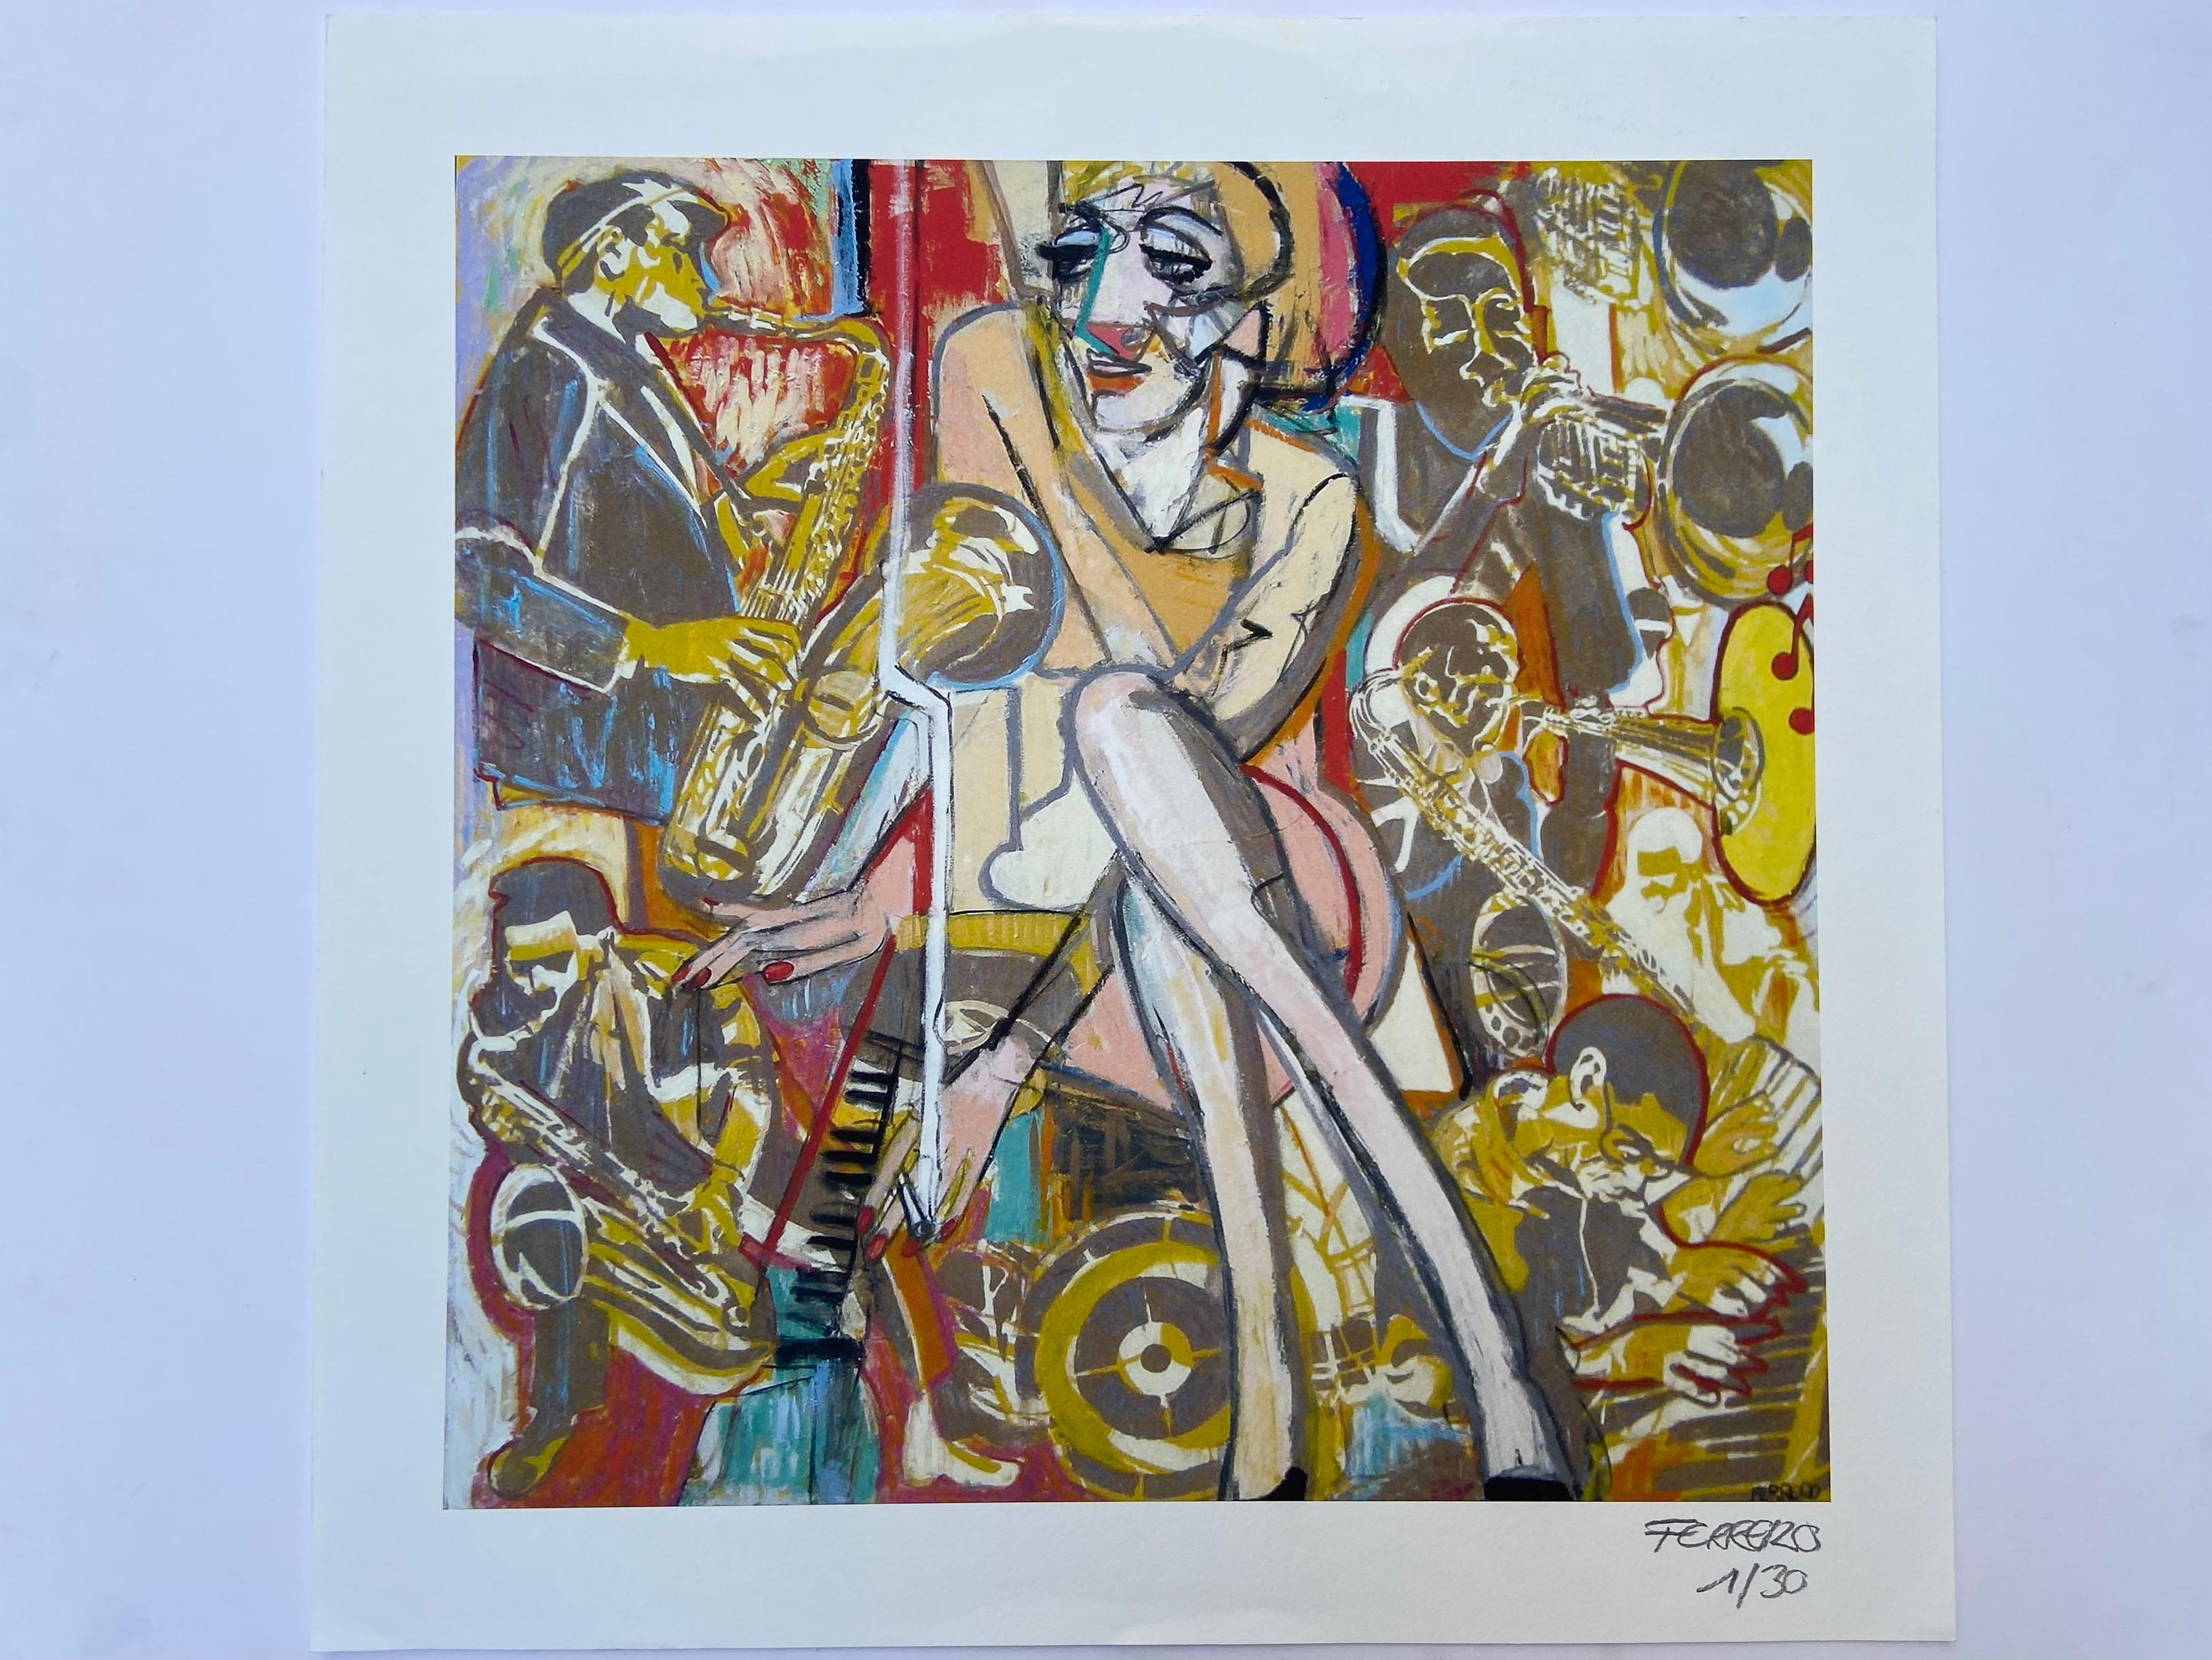 Jazzy - Marc Ferrero
Lithographie signée et numérotée à la main sur 30 exemplaires
54,5 x 55 cm
Circa 2015